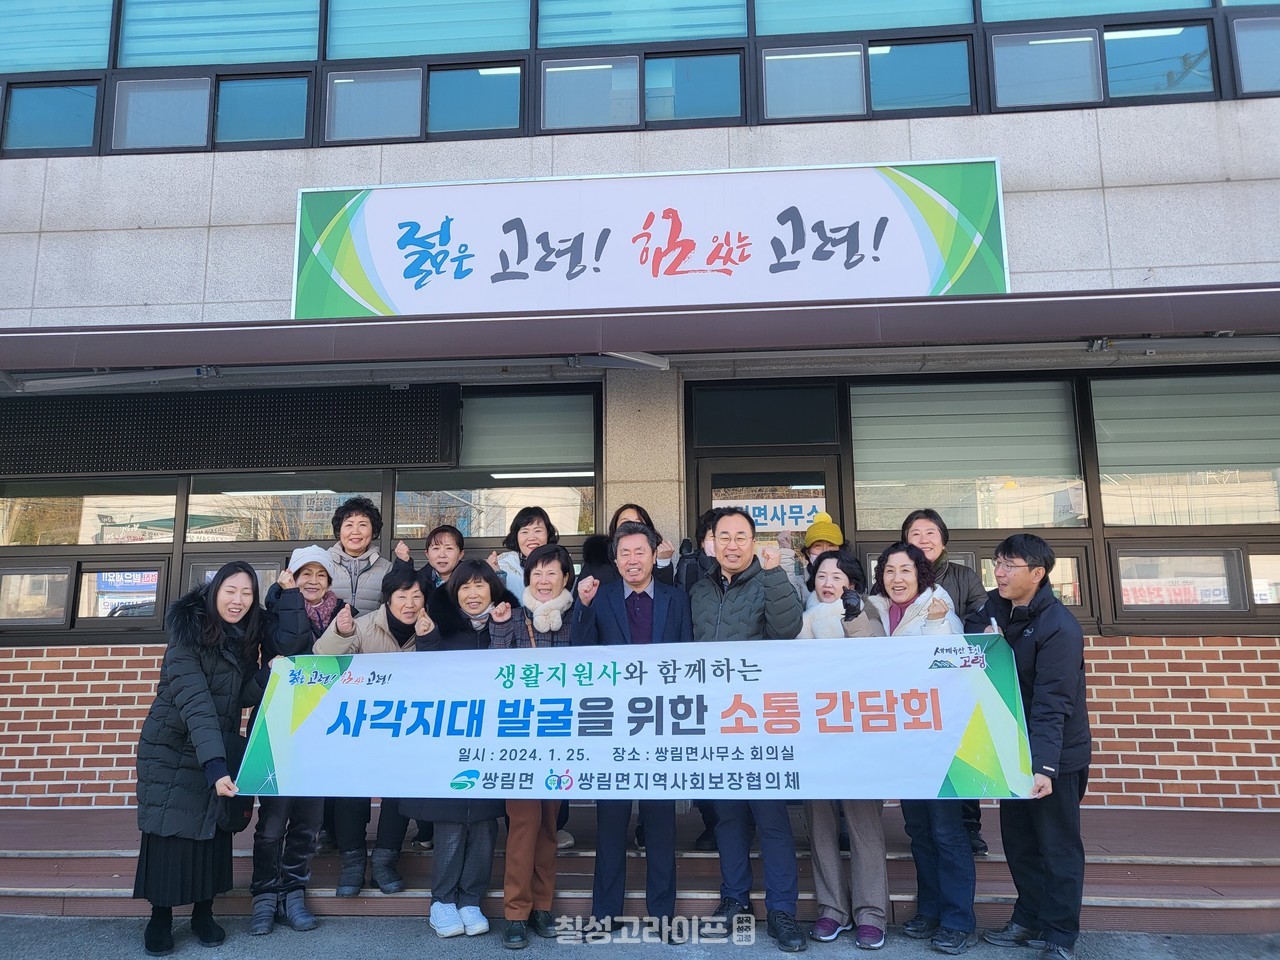 쌍림면, 생활지원사와 함께하는 복지사각지대 발굴을 위한 소통간담회 개최